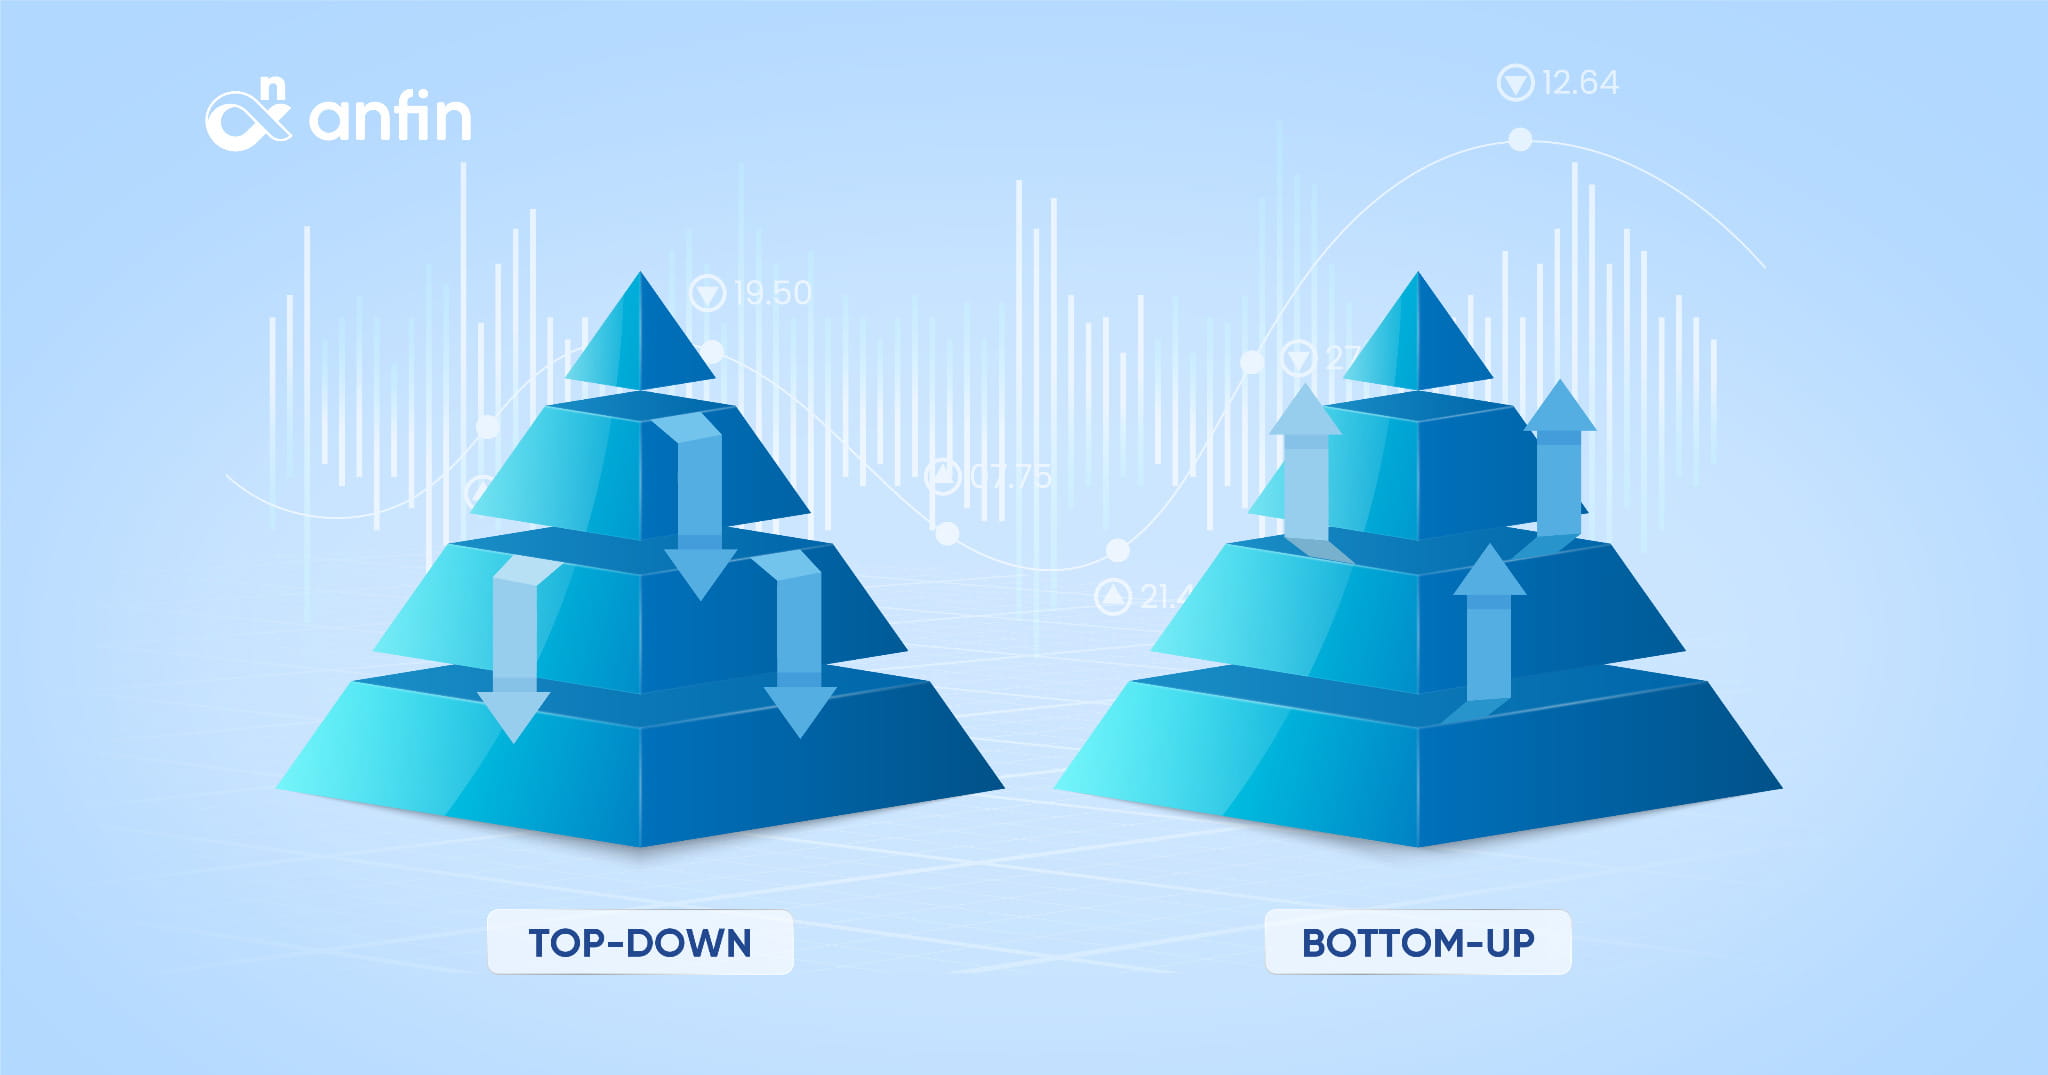 Phương pháp đầu tư Top-Down và Bottom-Up là gì? Phân biệt như thế nào?